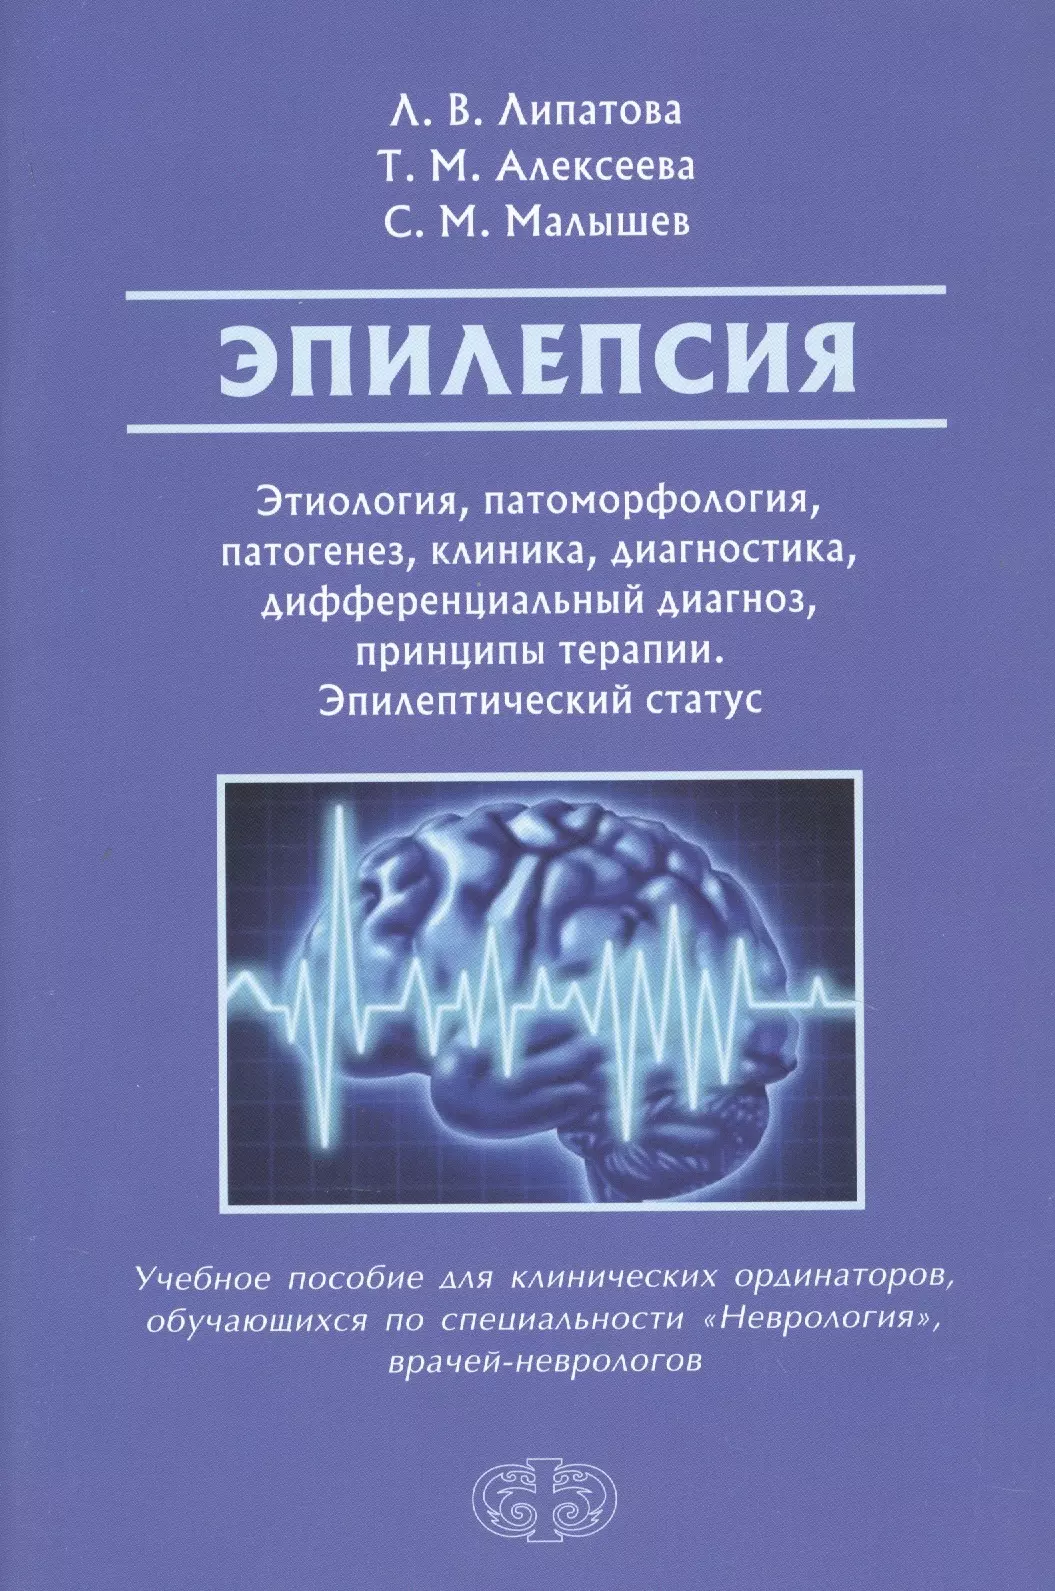 И 14 диагноз. Этиология эпилепсии. Эпилепсия этиология и патогенез. Книги про эпилепсию. Эпилептический статус.